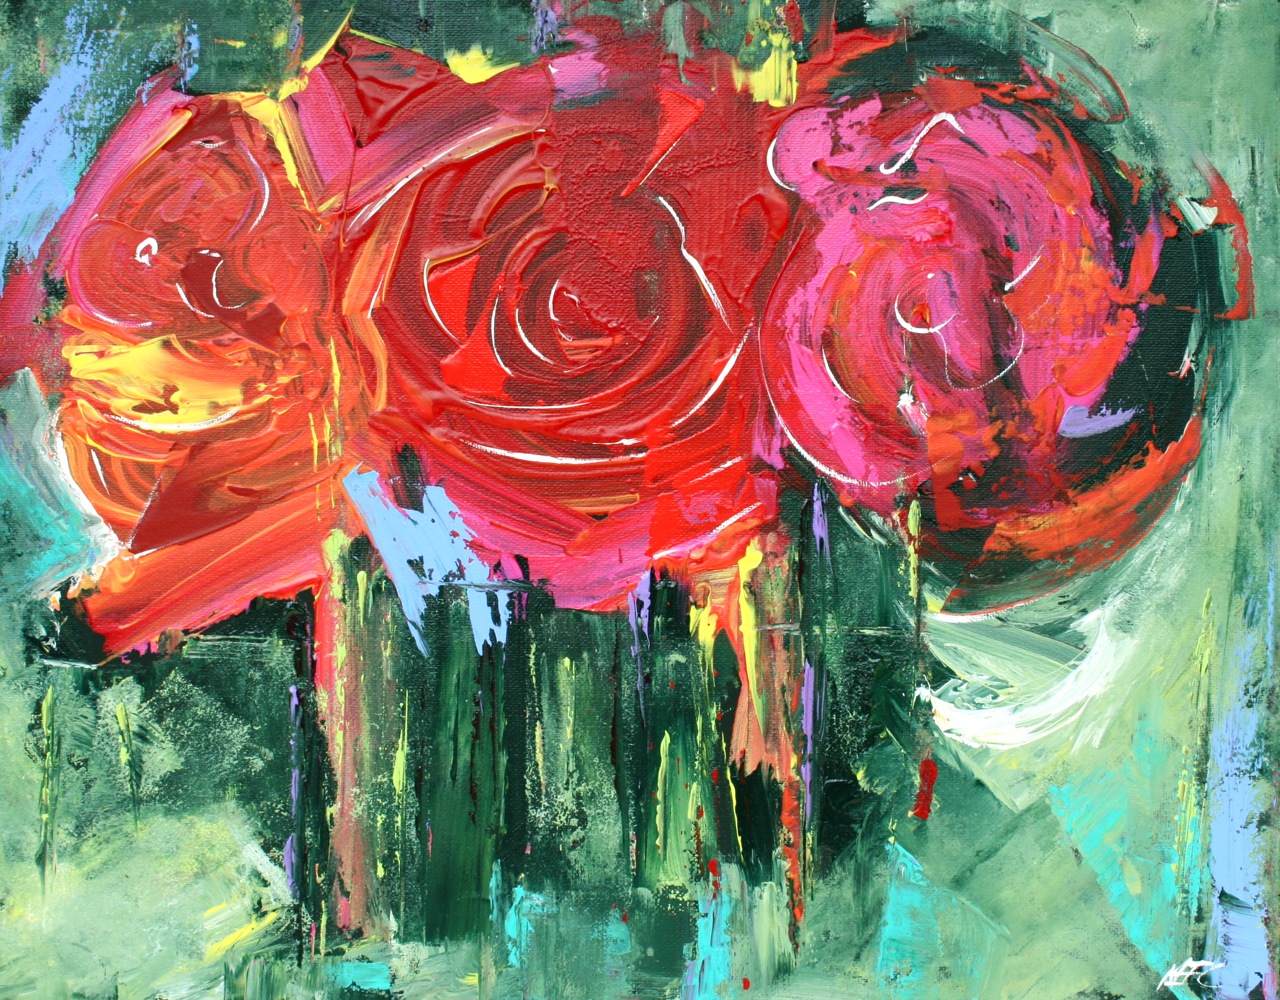 Картины и их цвета. Роза экспрессионизм. Джон Беркли художник абстракционист. Абстрактный экспрессионизм цветы. Модерн арт Modern Art роза.